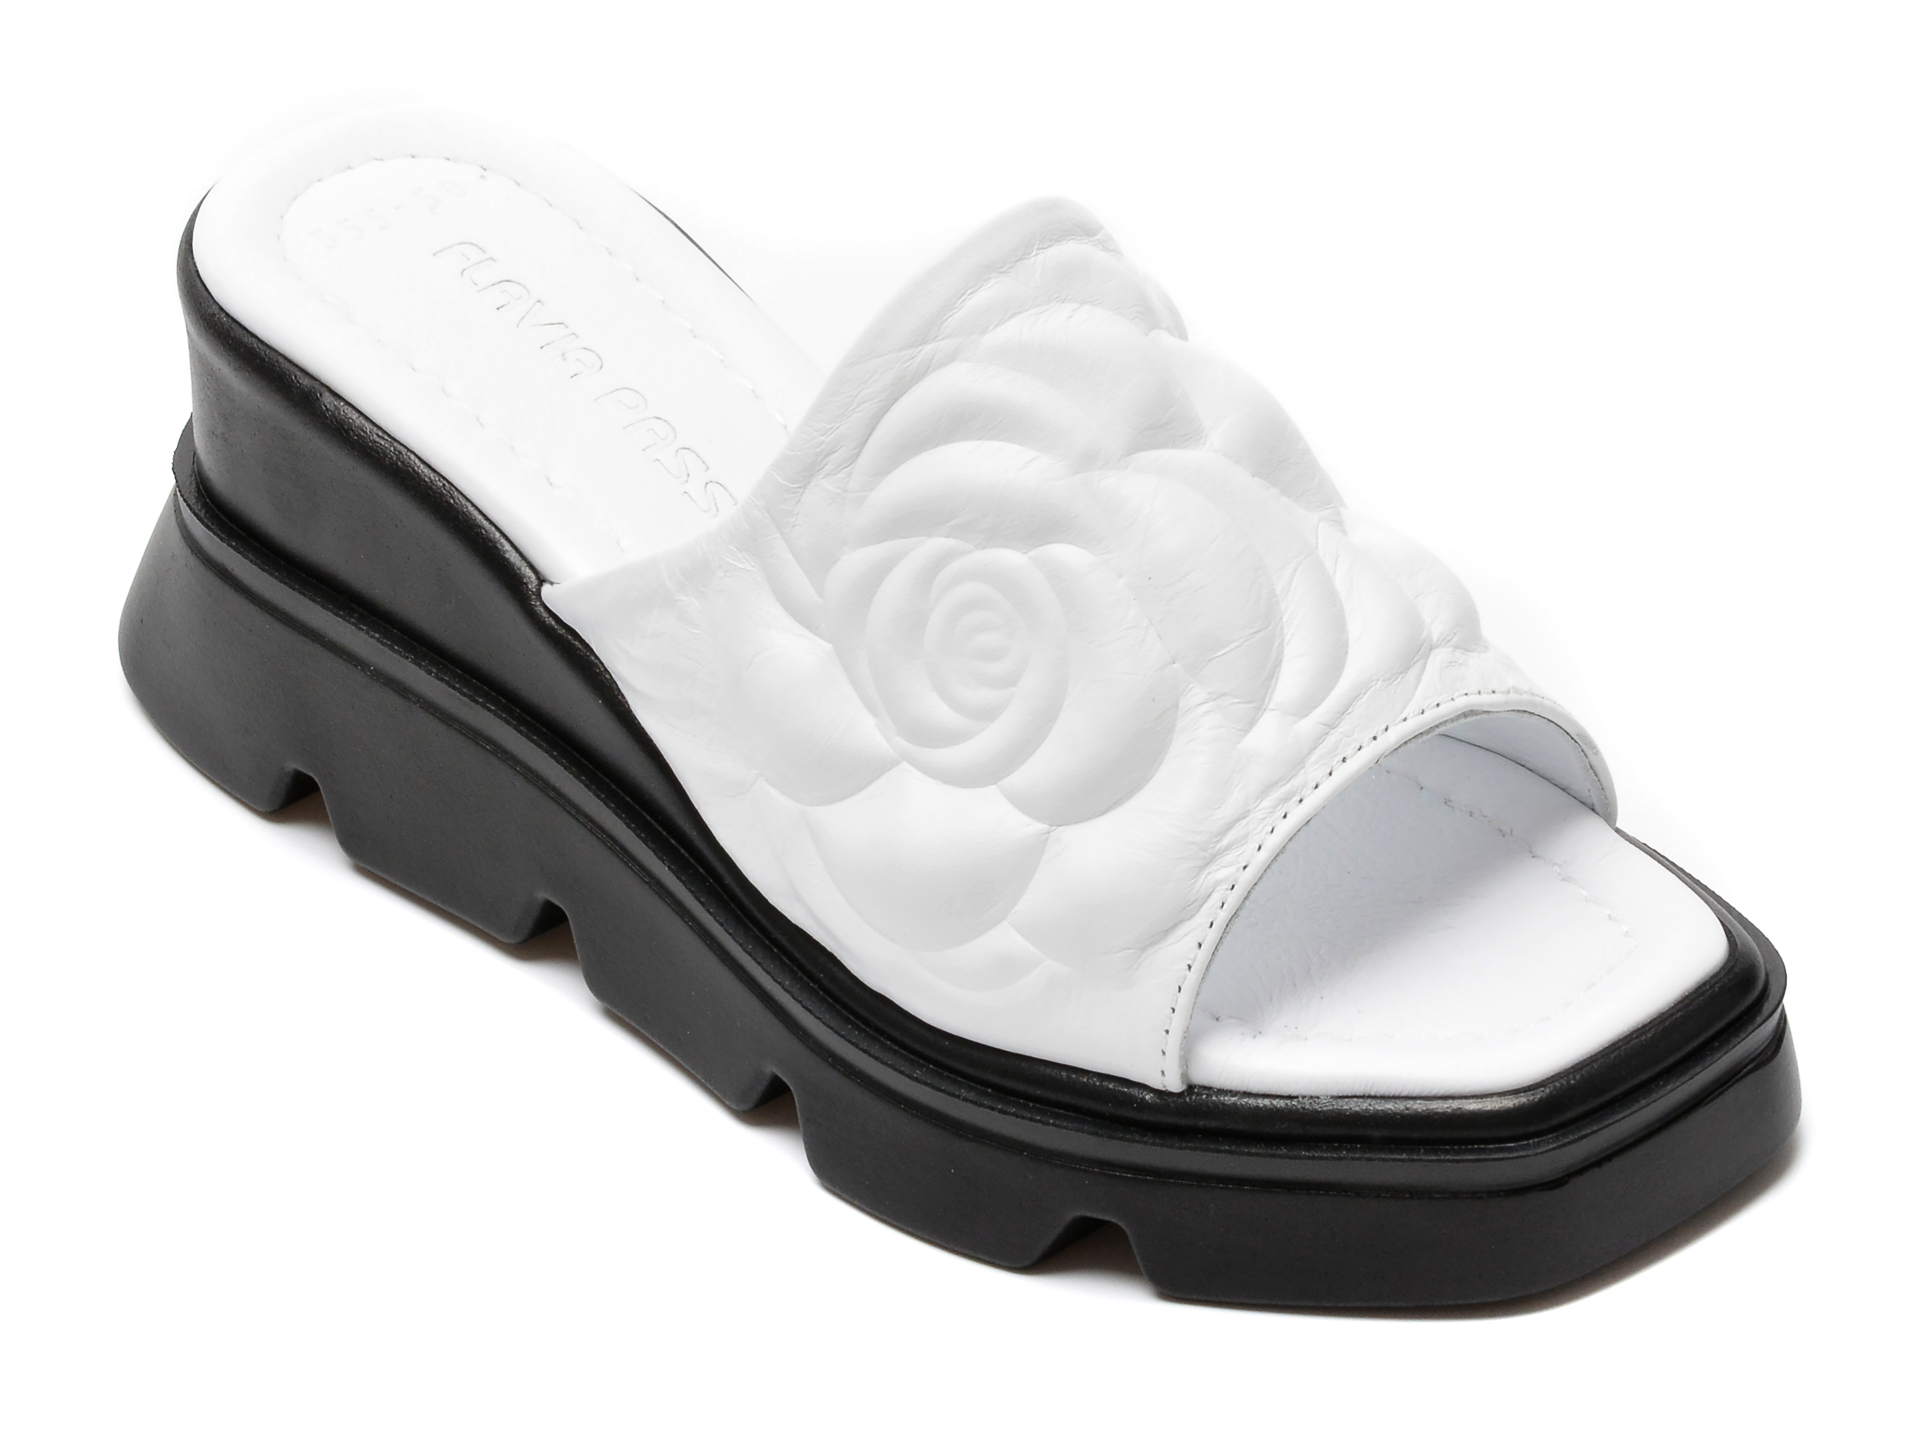 Papuci FLAVIA PASSINI albi, 82555, din piele naturala Flavia Passini